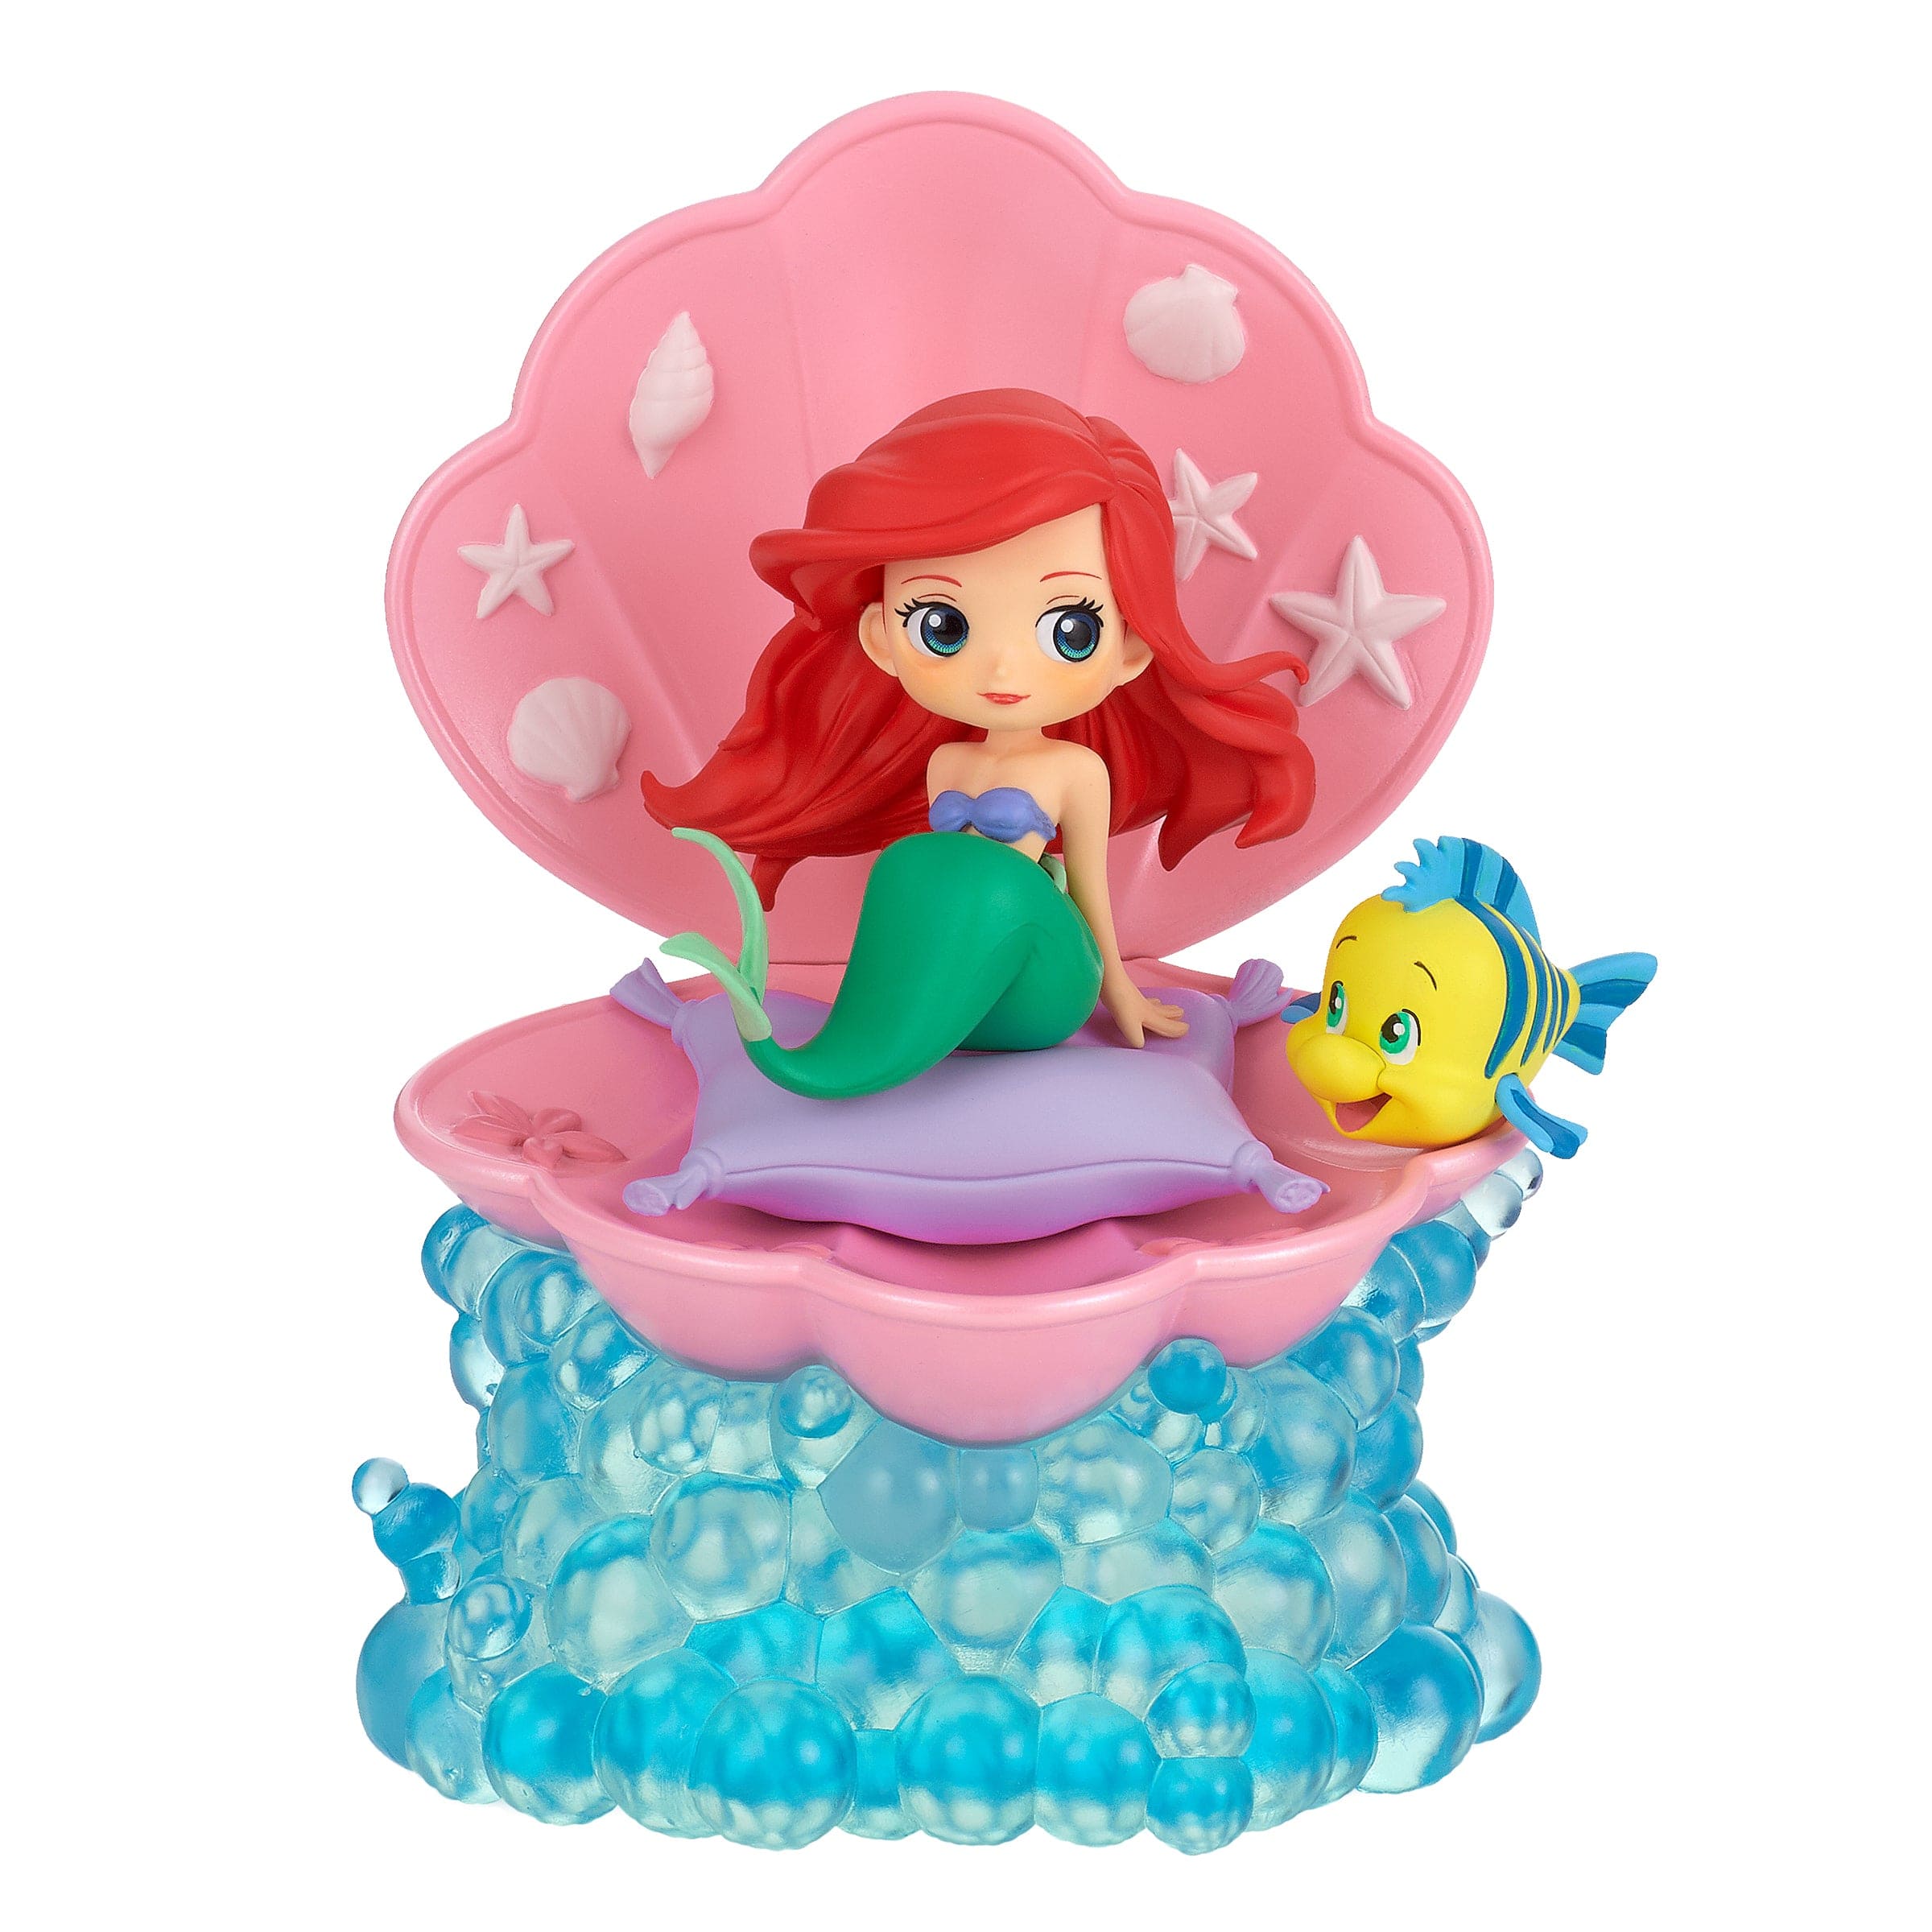 Little Buddy Disney Stories Ariel & Flounder Q posket Figure ver.A (Pink Clamshell) Kawaii Gifts 4983164176483